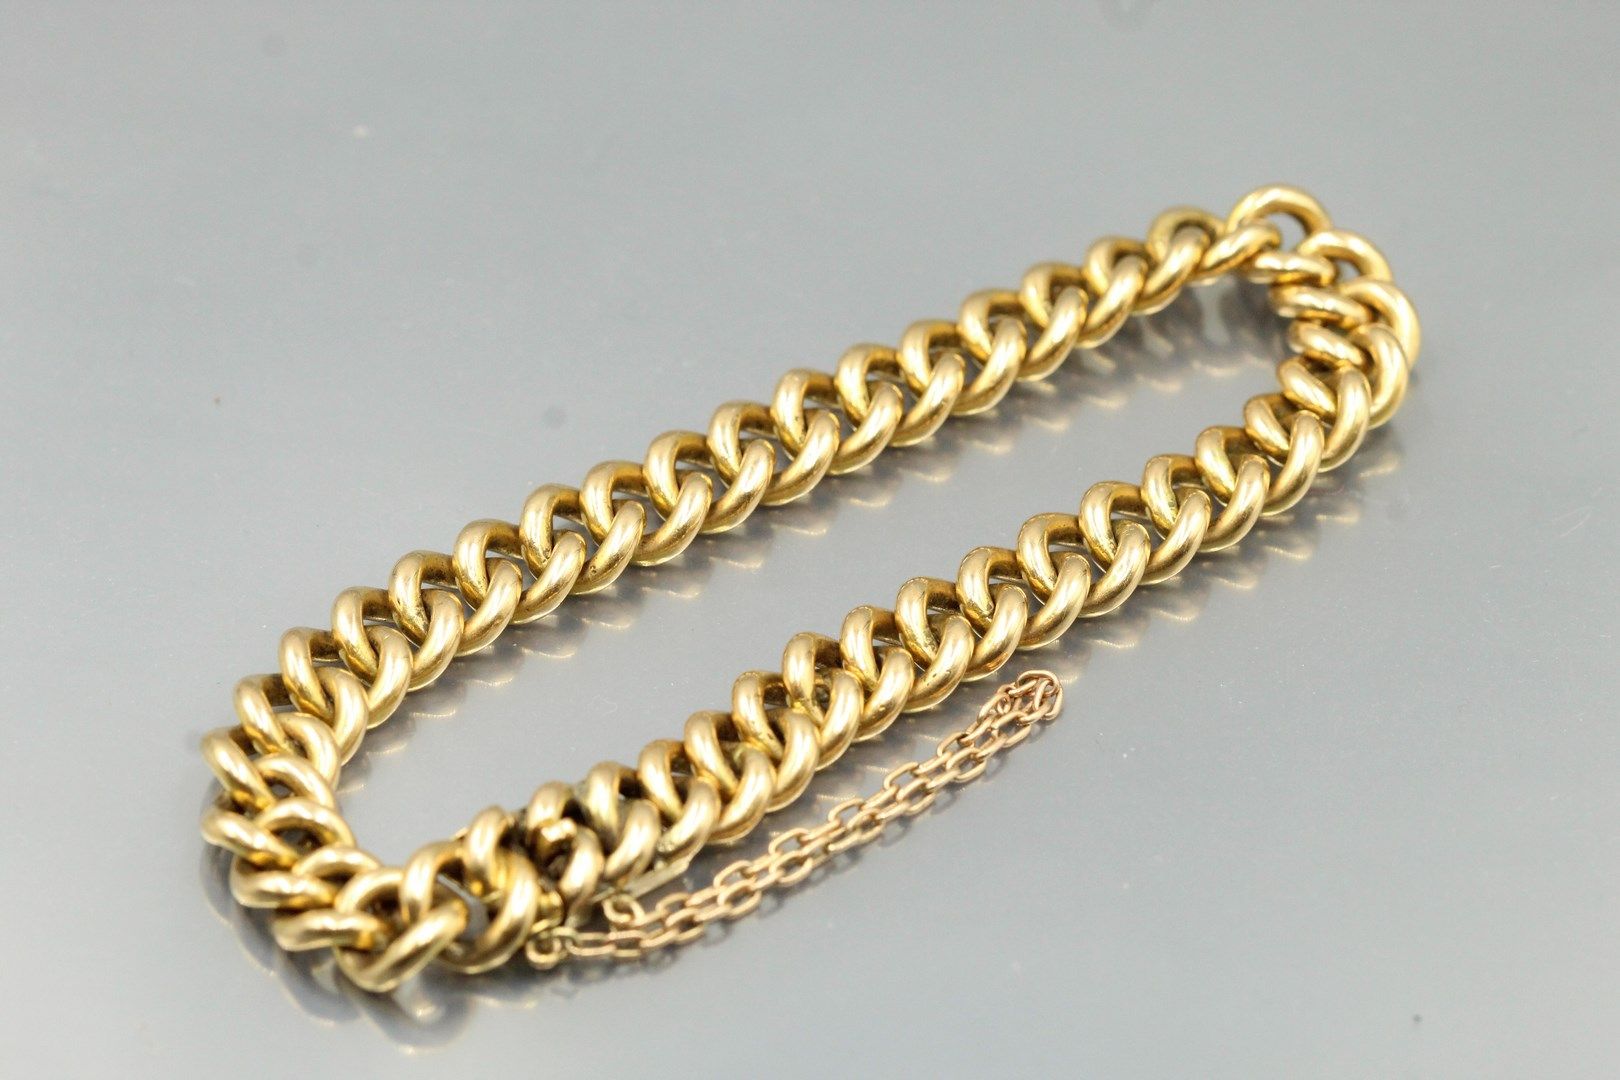 Null Bracciale in oro giallo 18 carati (750) con catena a nastro.

Dimensione de&hellip;